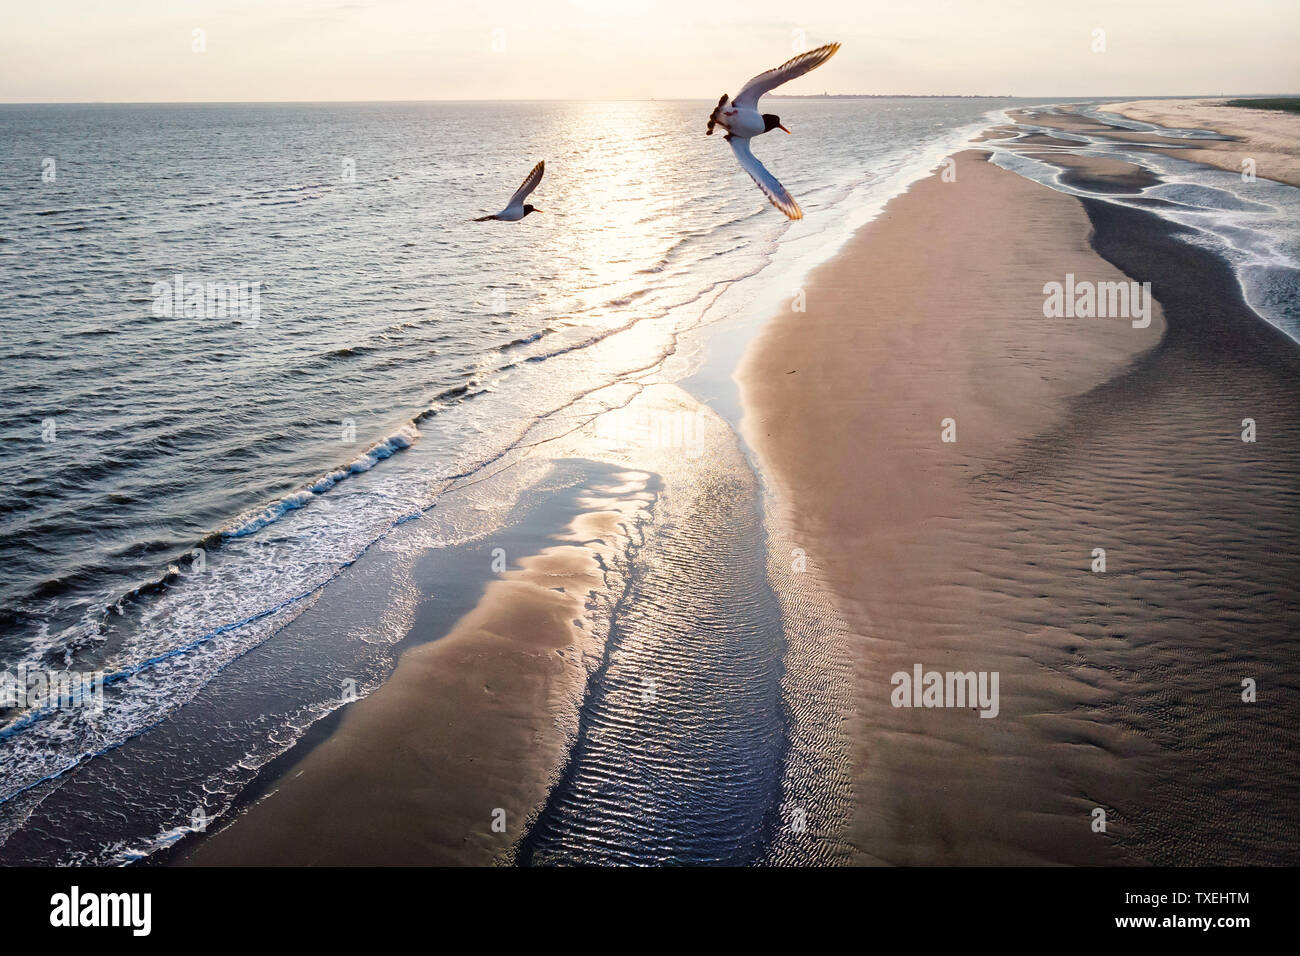 Drones Vue sur la plage de sable fin avec le vol d'oiseaux de mer en face de l'appareil photo. Banque D'Images